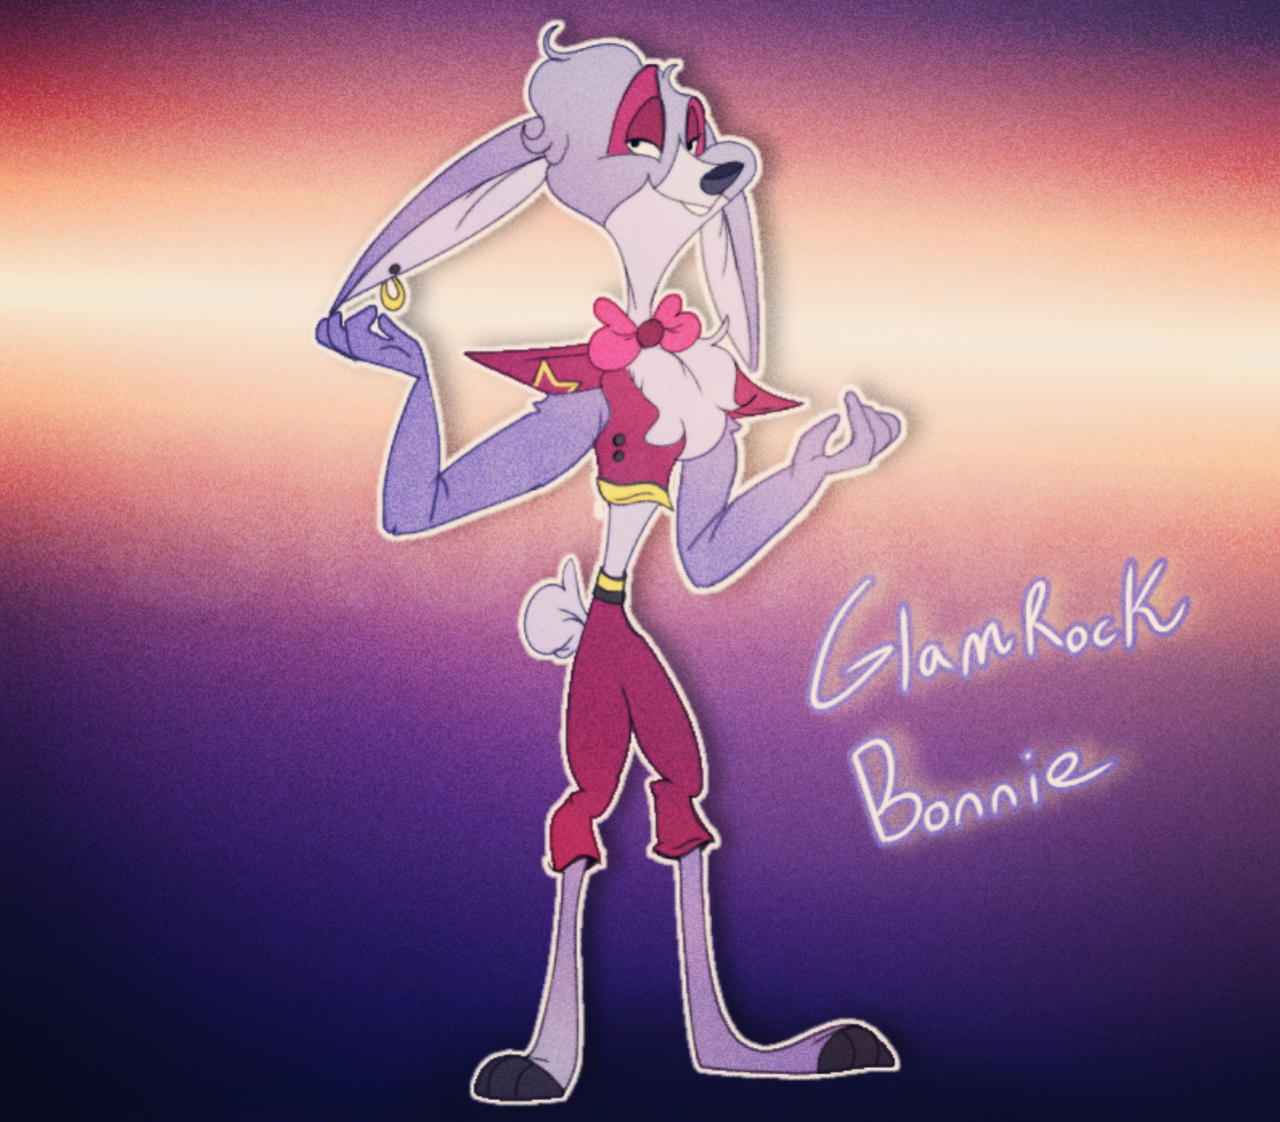 Glamrock Bonnie (FNAF AU) by Royal2014 on DeviantArt